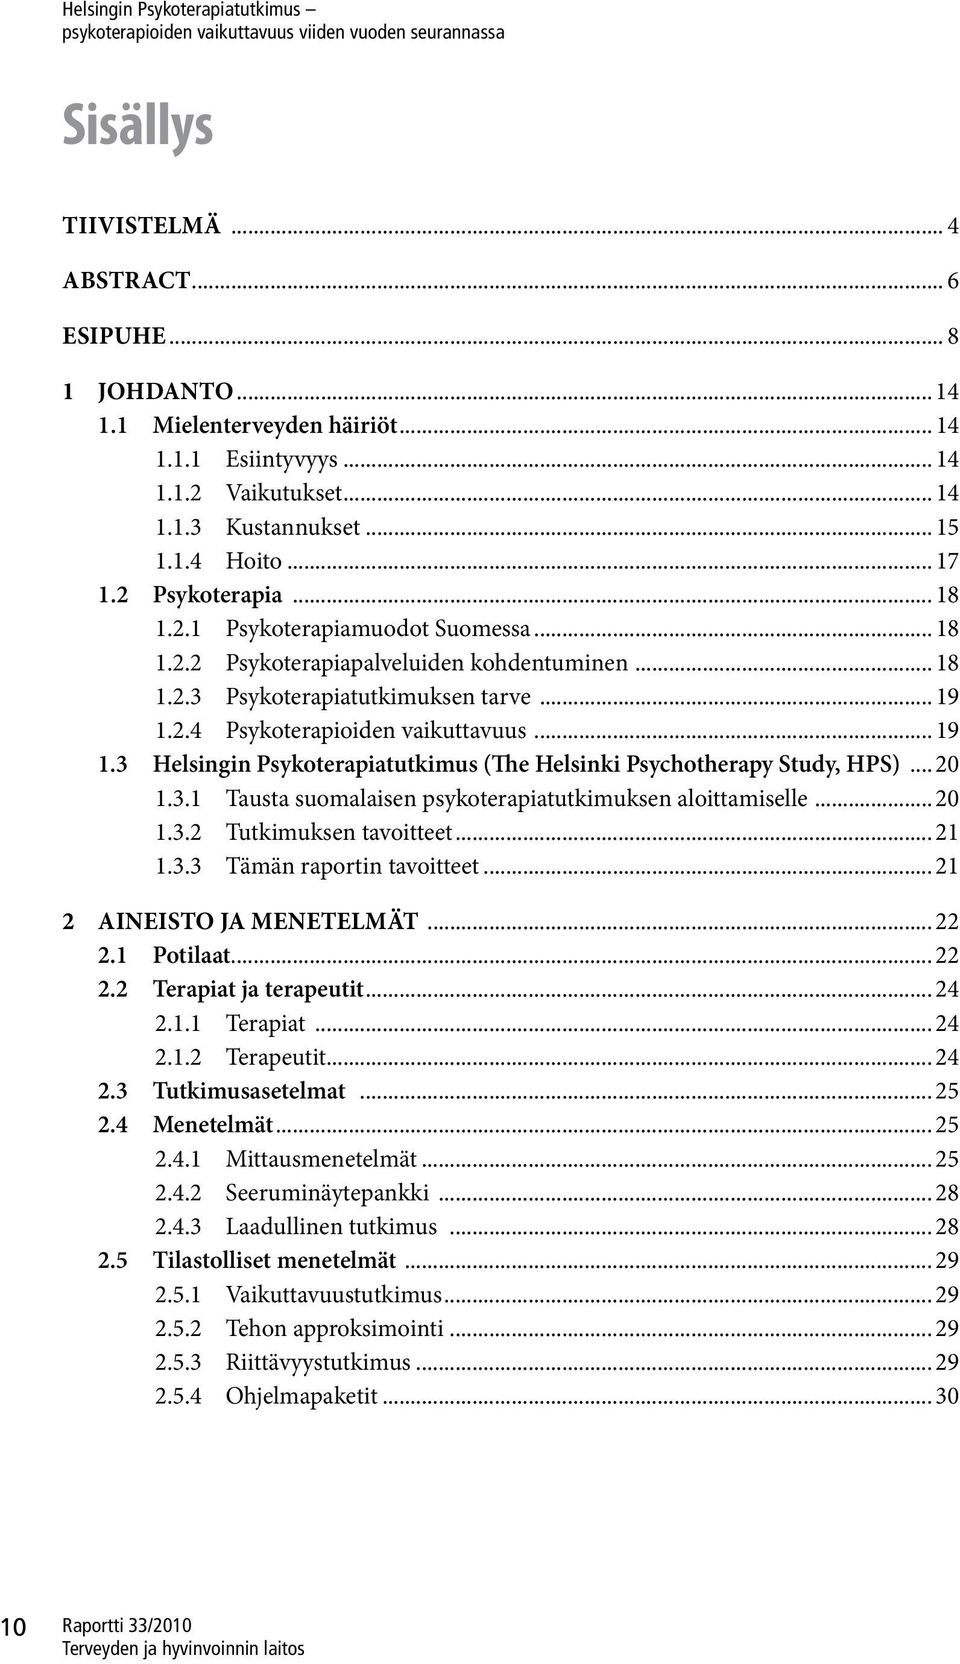 2.4 Psykoterapioiden vaikuttavuus... 19 1.3 Helsingin Psykoterapiatutkimus (The Helsinki Psychotherapy Study, HPS)... 20 1.3.1 Tausta suomalaisen psykoterapiatutkimuksen aloittamiselle... 20 1.3.2 Tutkimuksen tavoitteet.